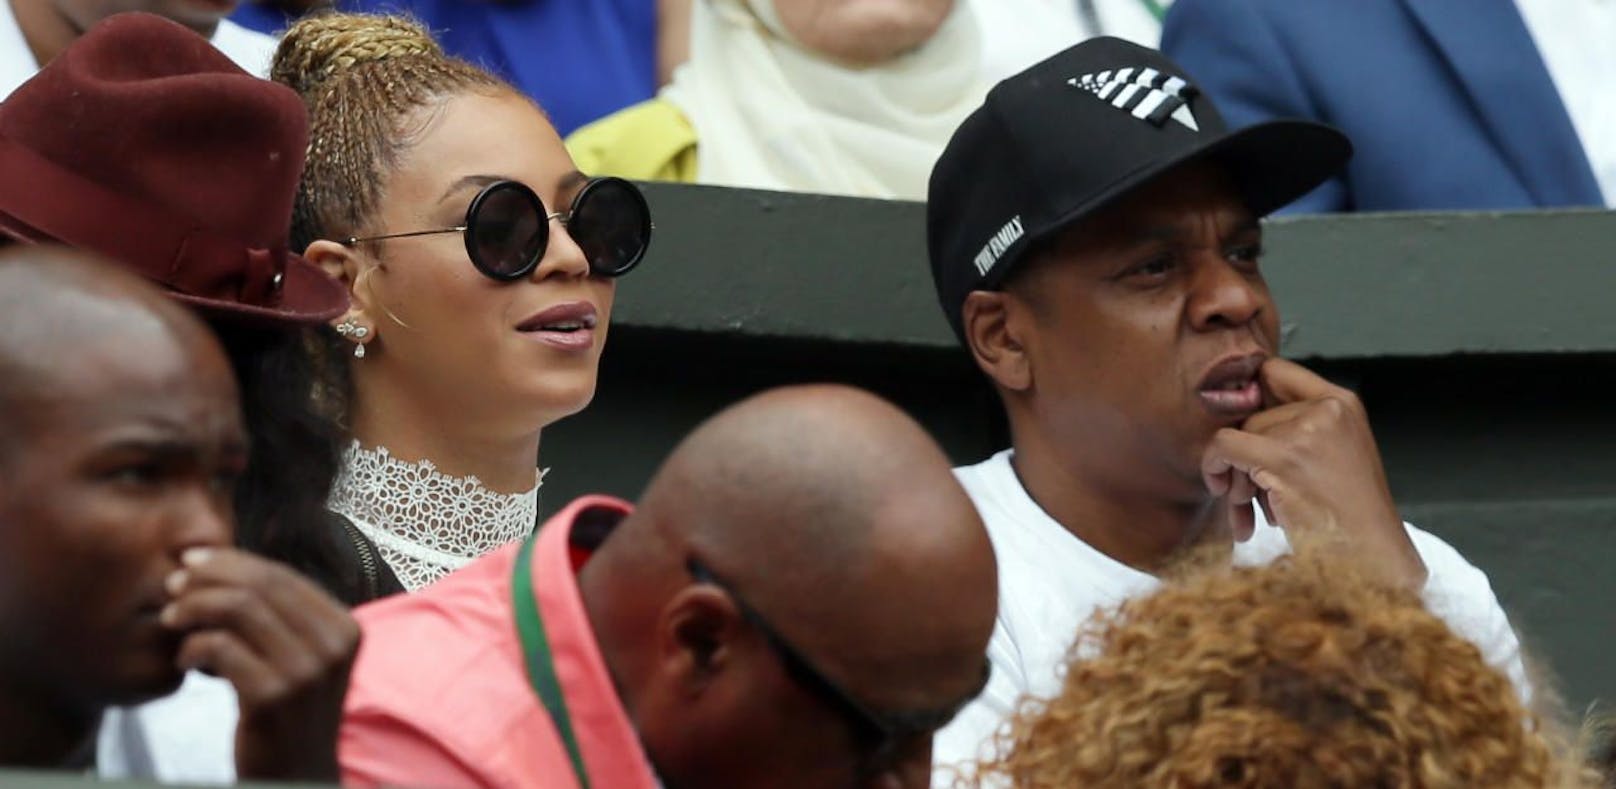 Das Popstar-Powerpaar Beyonce und Jay Z bei einem Wimbledon-Match